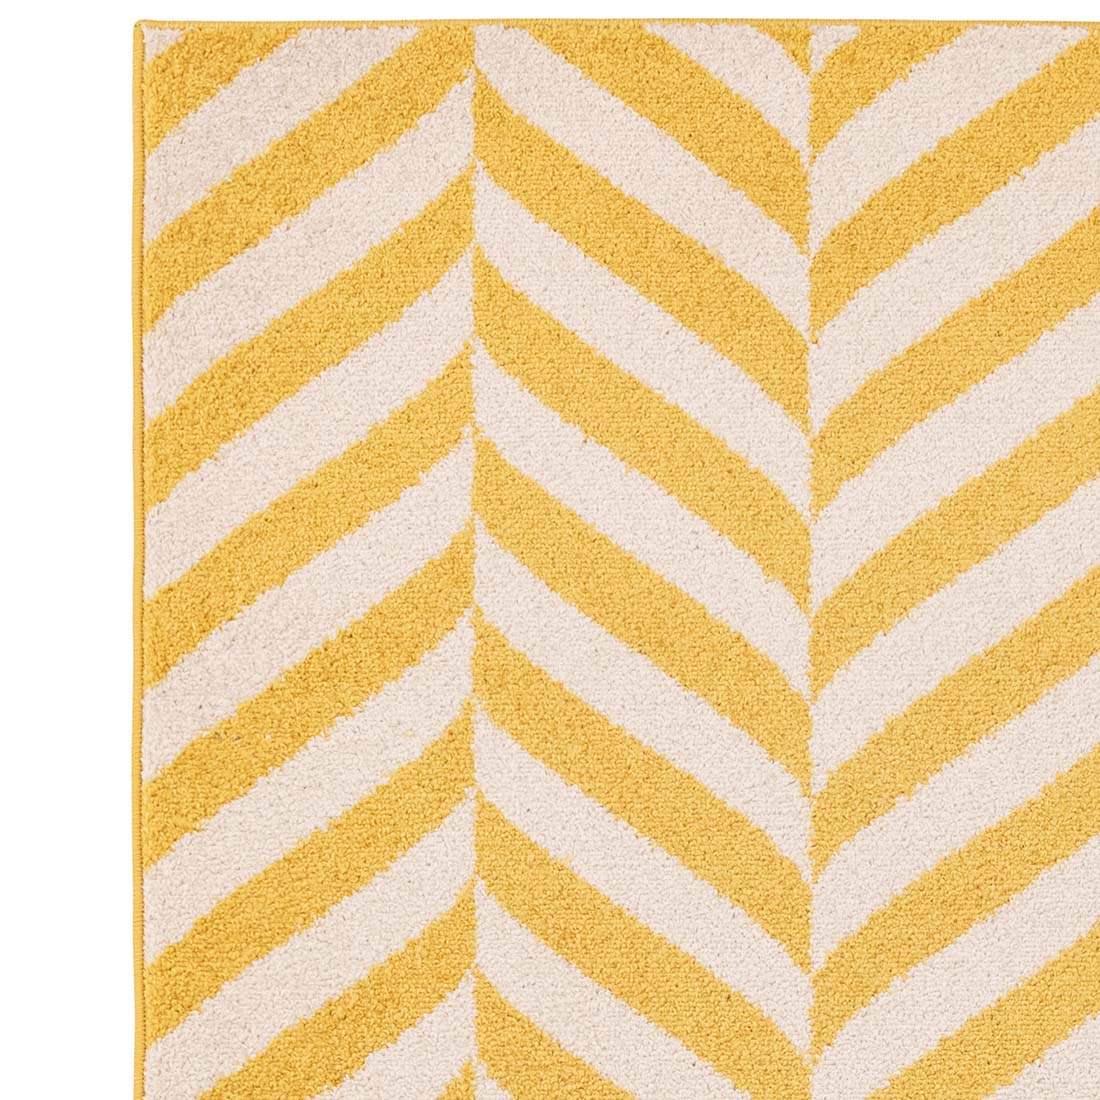 abstract yellow flatweave rug
